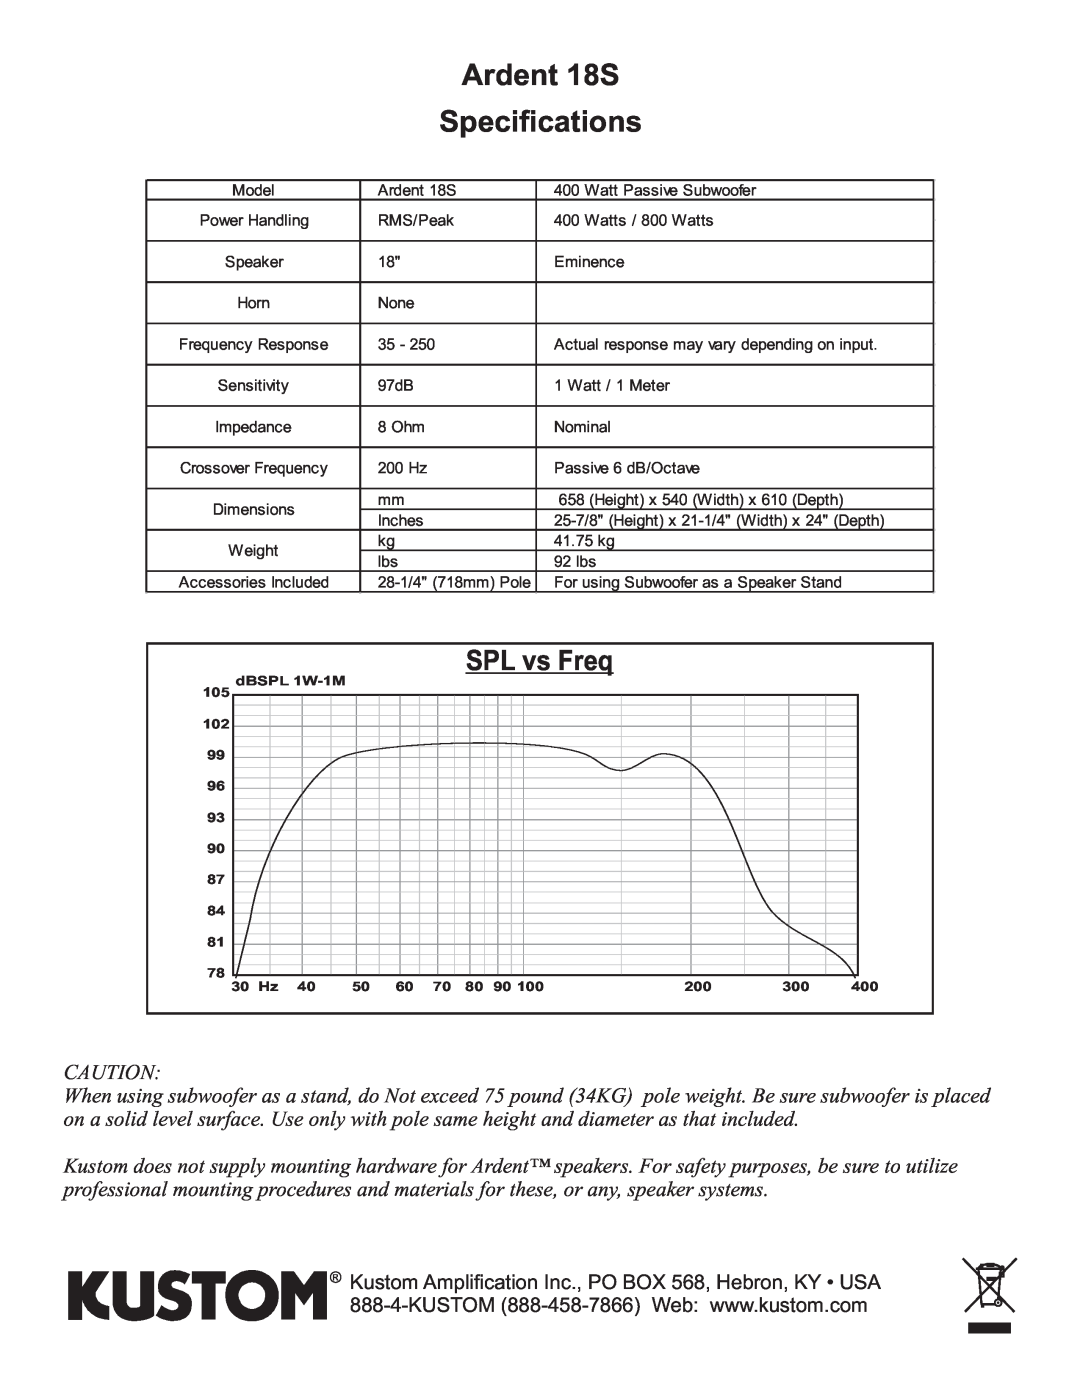 Kustom owner manual Ardent 18S Specifications, SPL vs Freq 